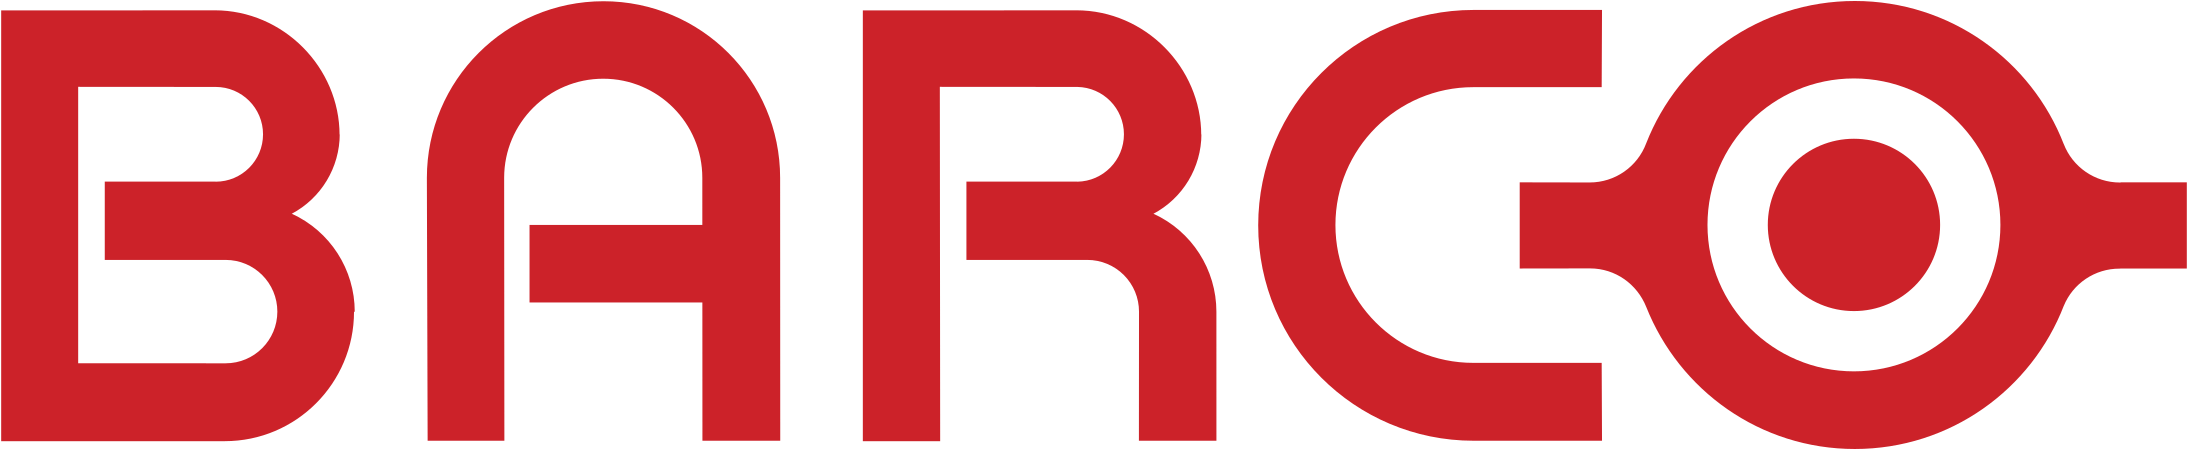 barco logo